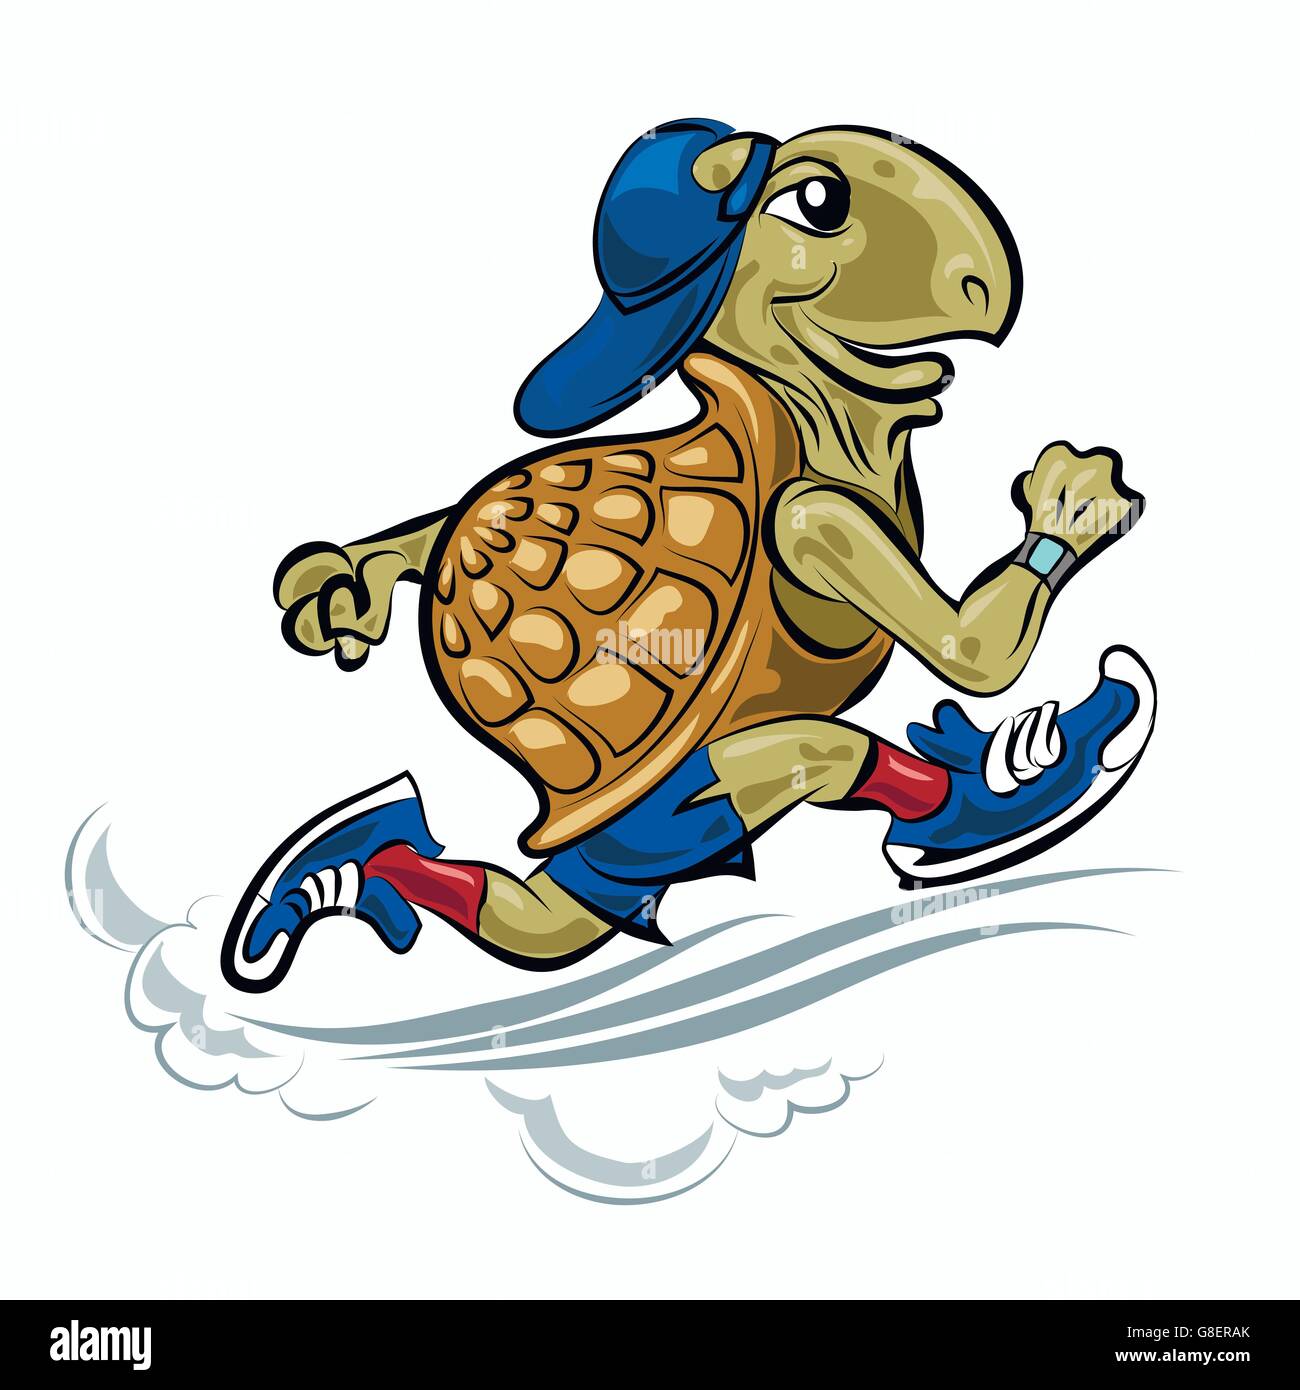 Schildkröte im sportlichen Schuhe und Hut laufen. Abbildung im Cartoon-Stil  Stock-Vektorgrafik - Alamy